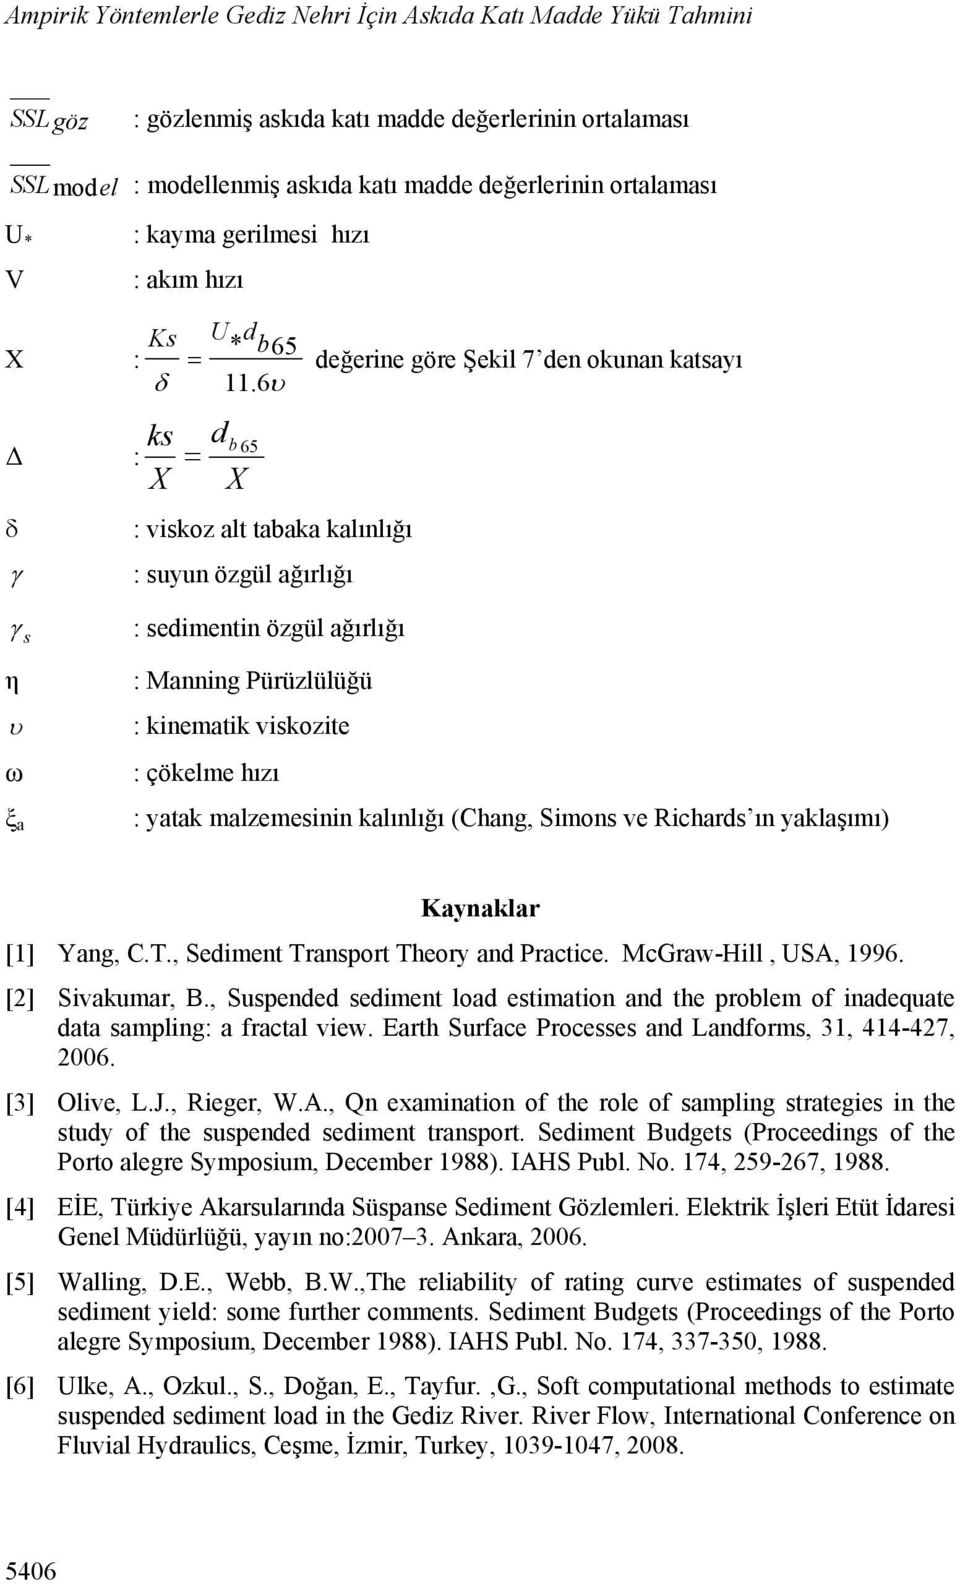 6 ks d b 65 Δ : X X : viskoz alt tabaka kalınlığı : suyun özgül ağırlığı s η ω ξ a : sedimentin özgül ağırlığı : Manning Pürüzlülüğü : kinematik viskozite : çökelme hızı : yatak malzemesinin